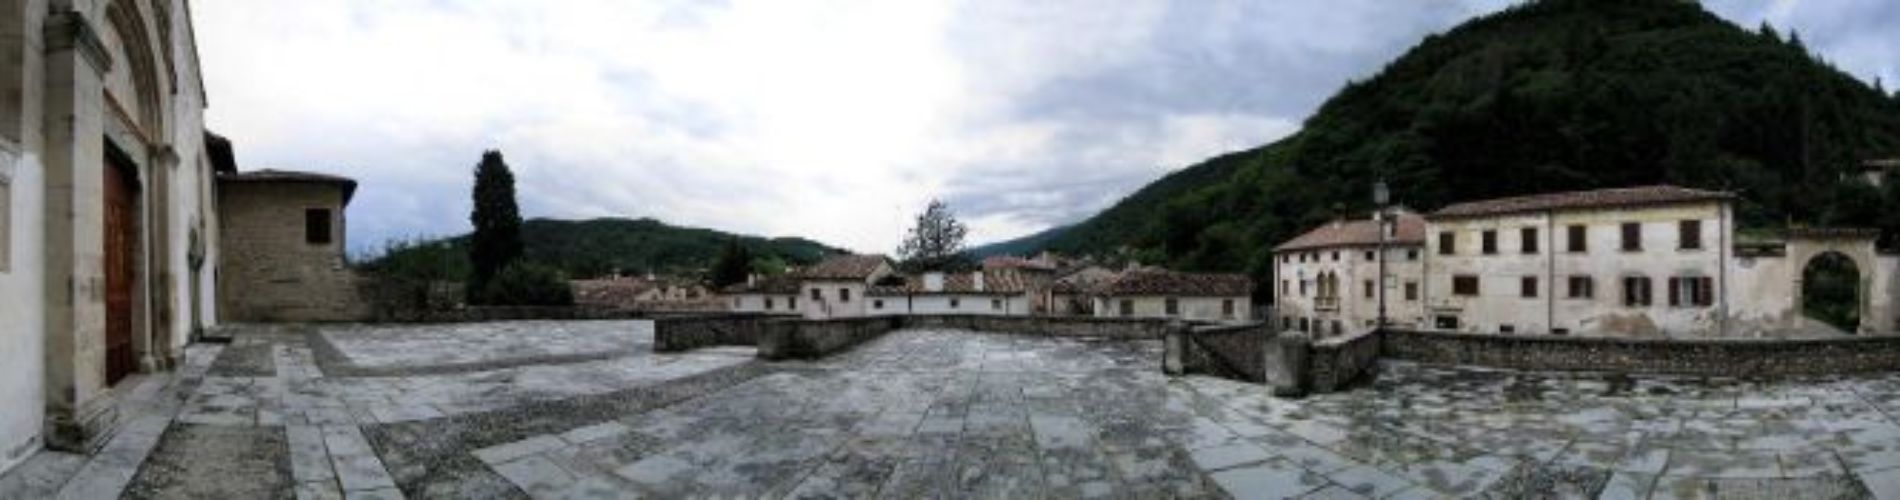 Abbazia Cistercense - Panoramica del sagrato.jpg.2017-08-09-10-04-10